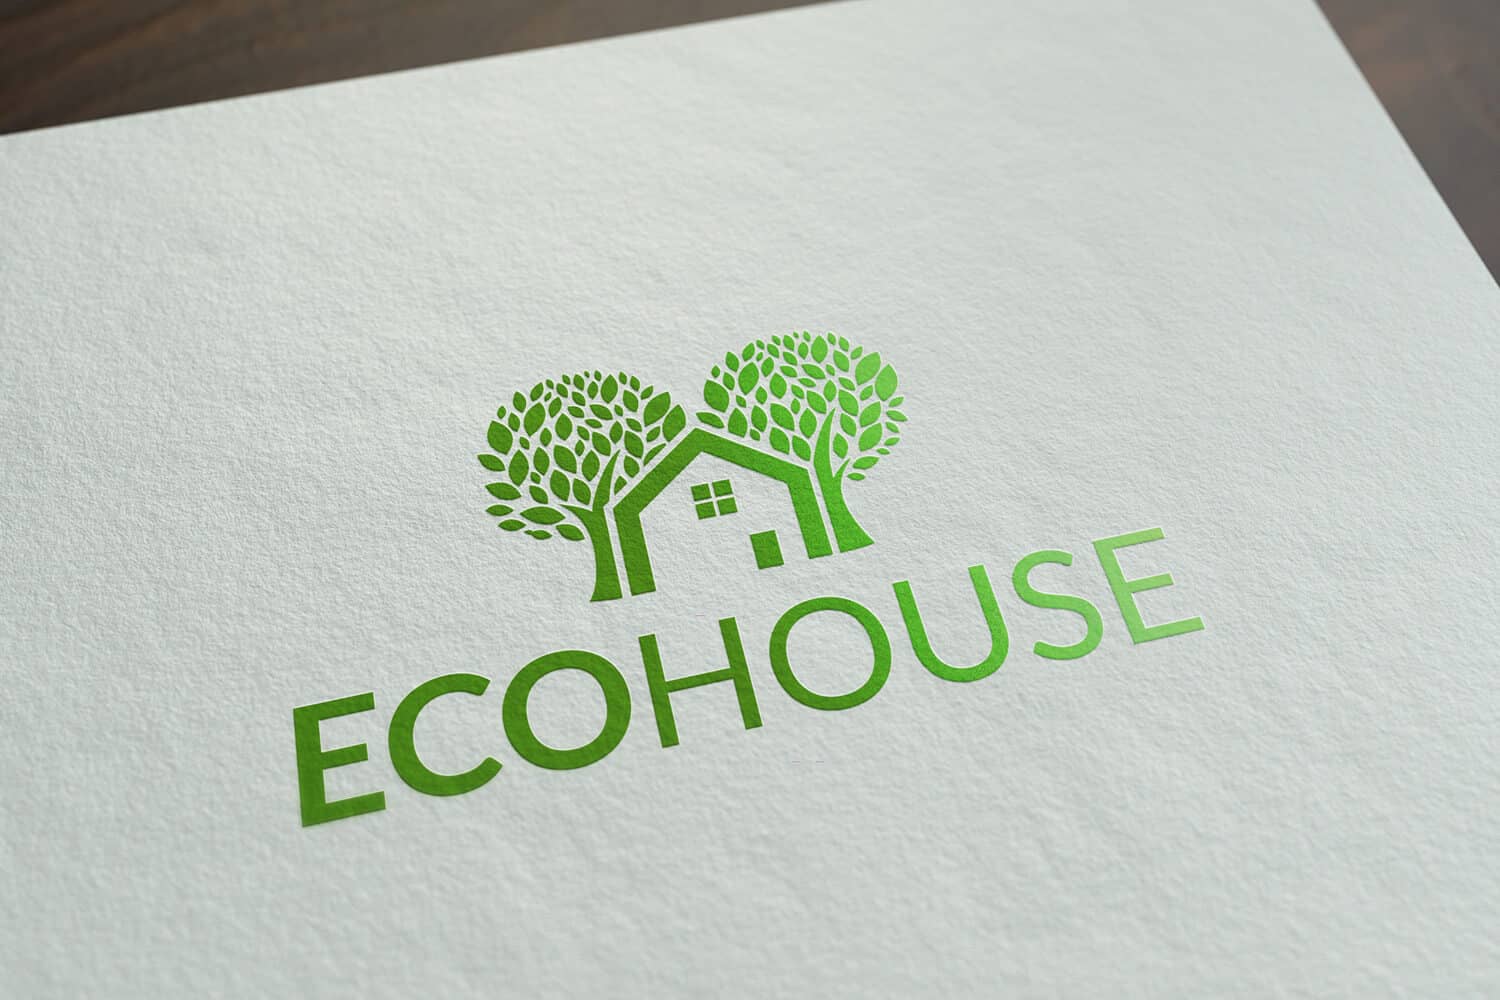 Ecohouse - ecologisch, groen logo met huis en bomen